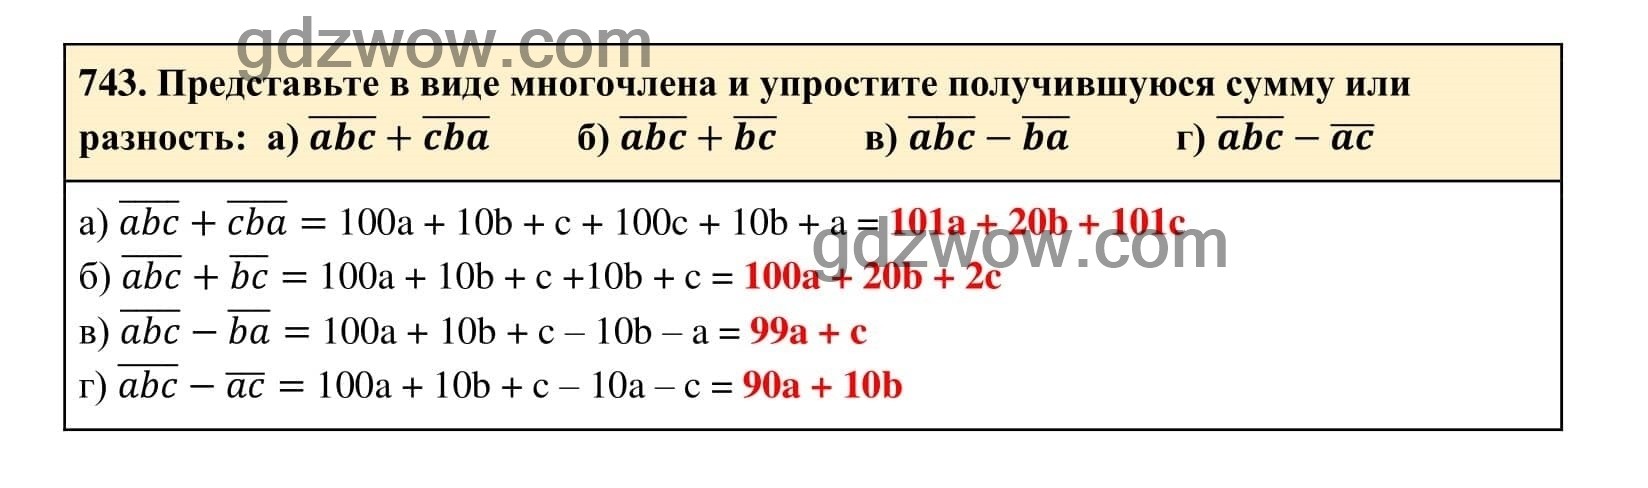 Упражнение 743 - ГДЗ по Алгебре 7 класс Учебник Макарычев (решебник) - GDZwow